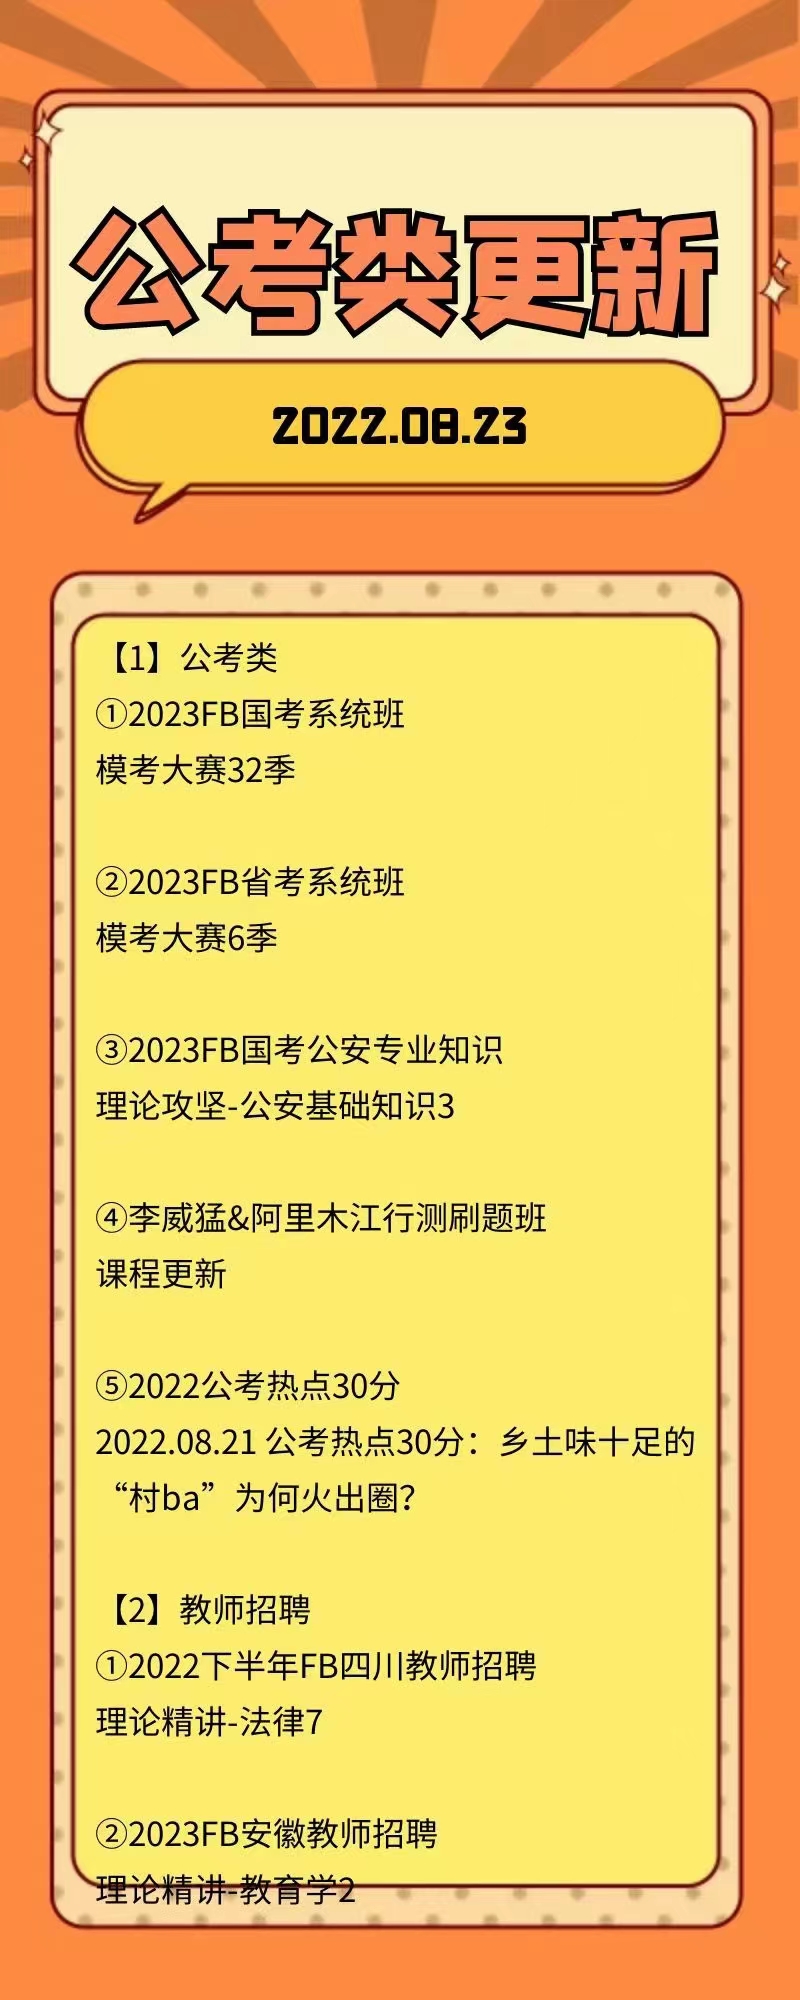 萌学院区08月23号更新 公务员 事业单位2022 教师招聘